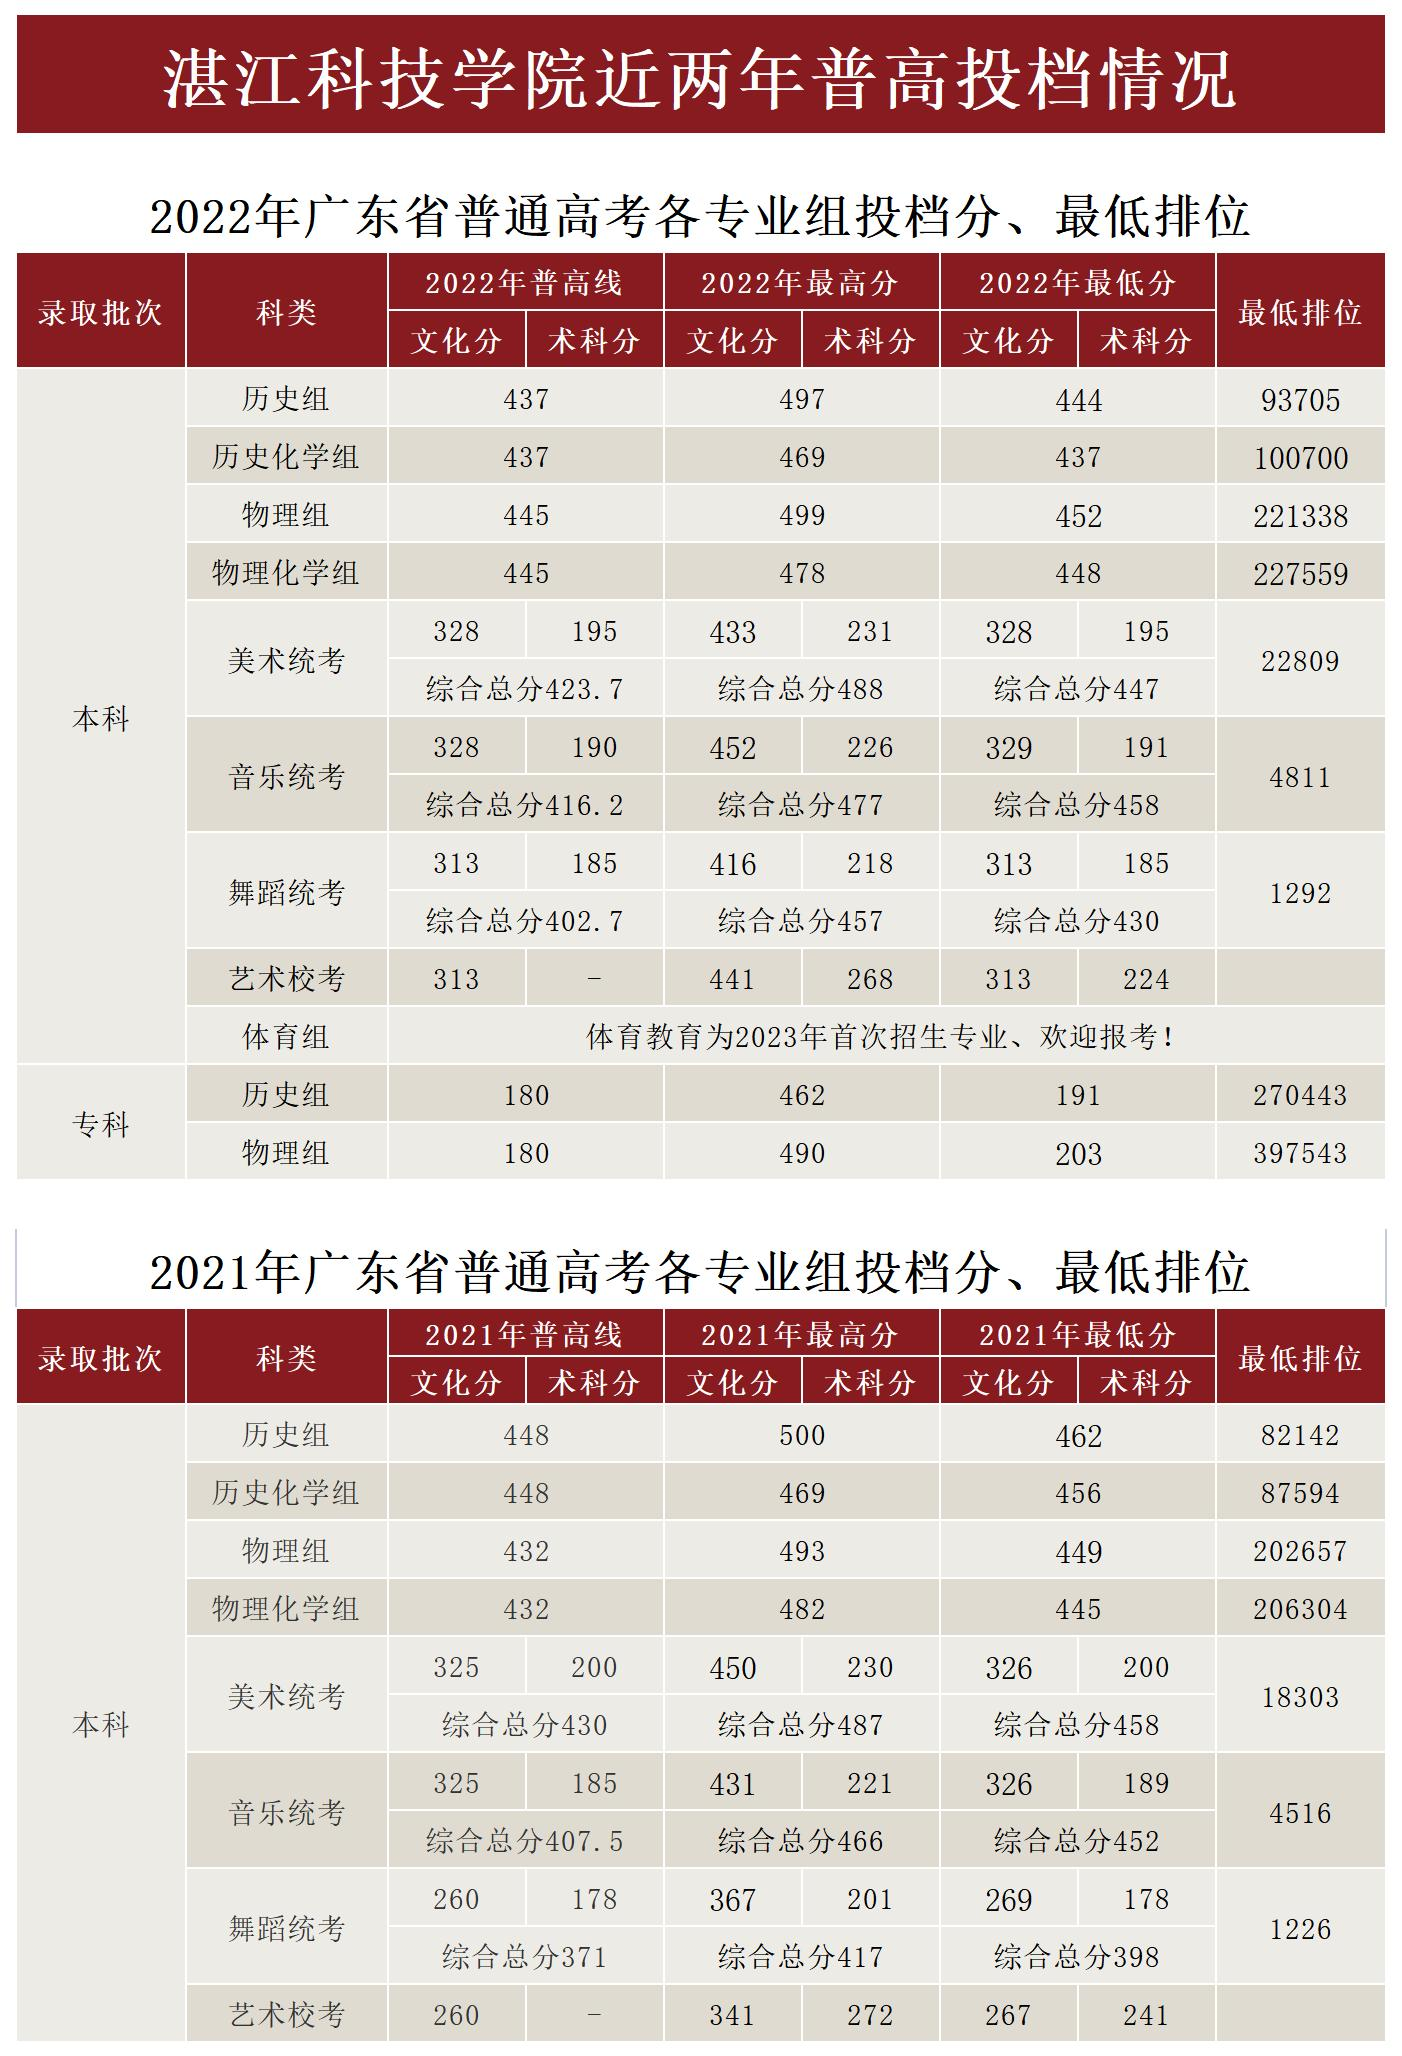 湛江科技学院2022-2021年普高投档情况